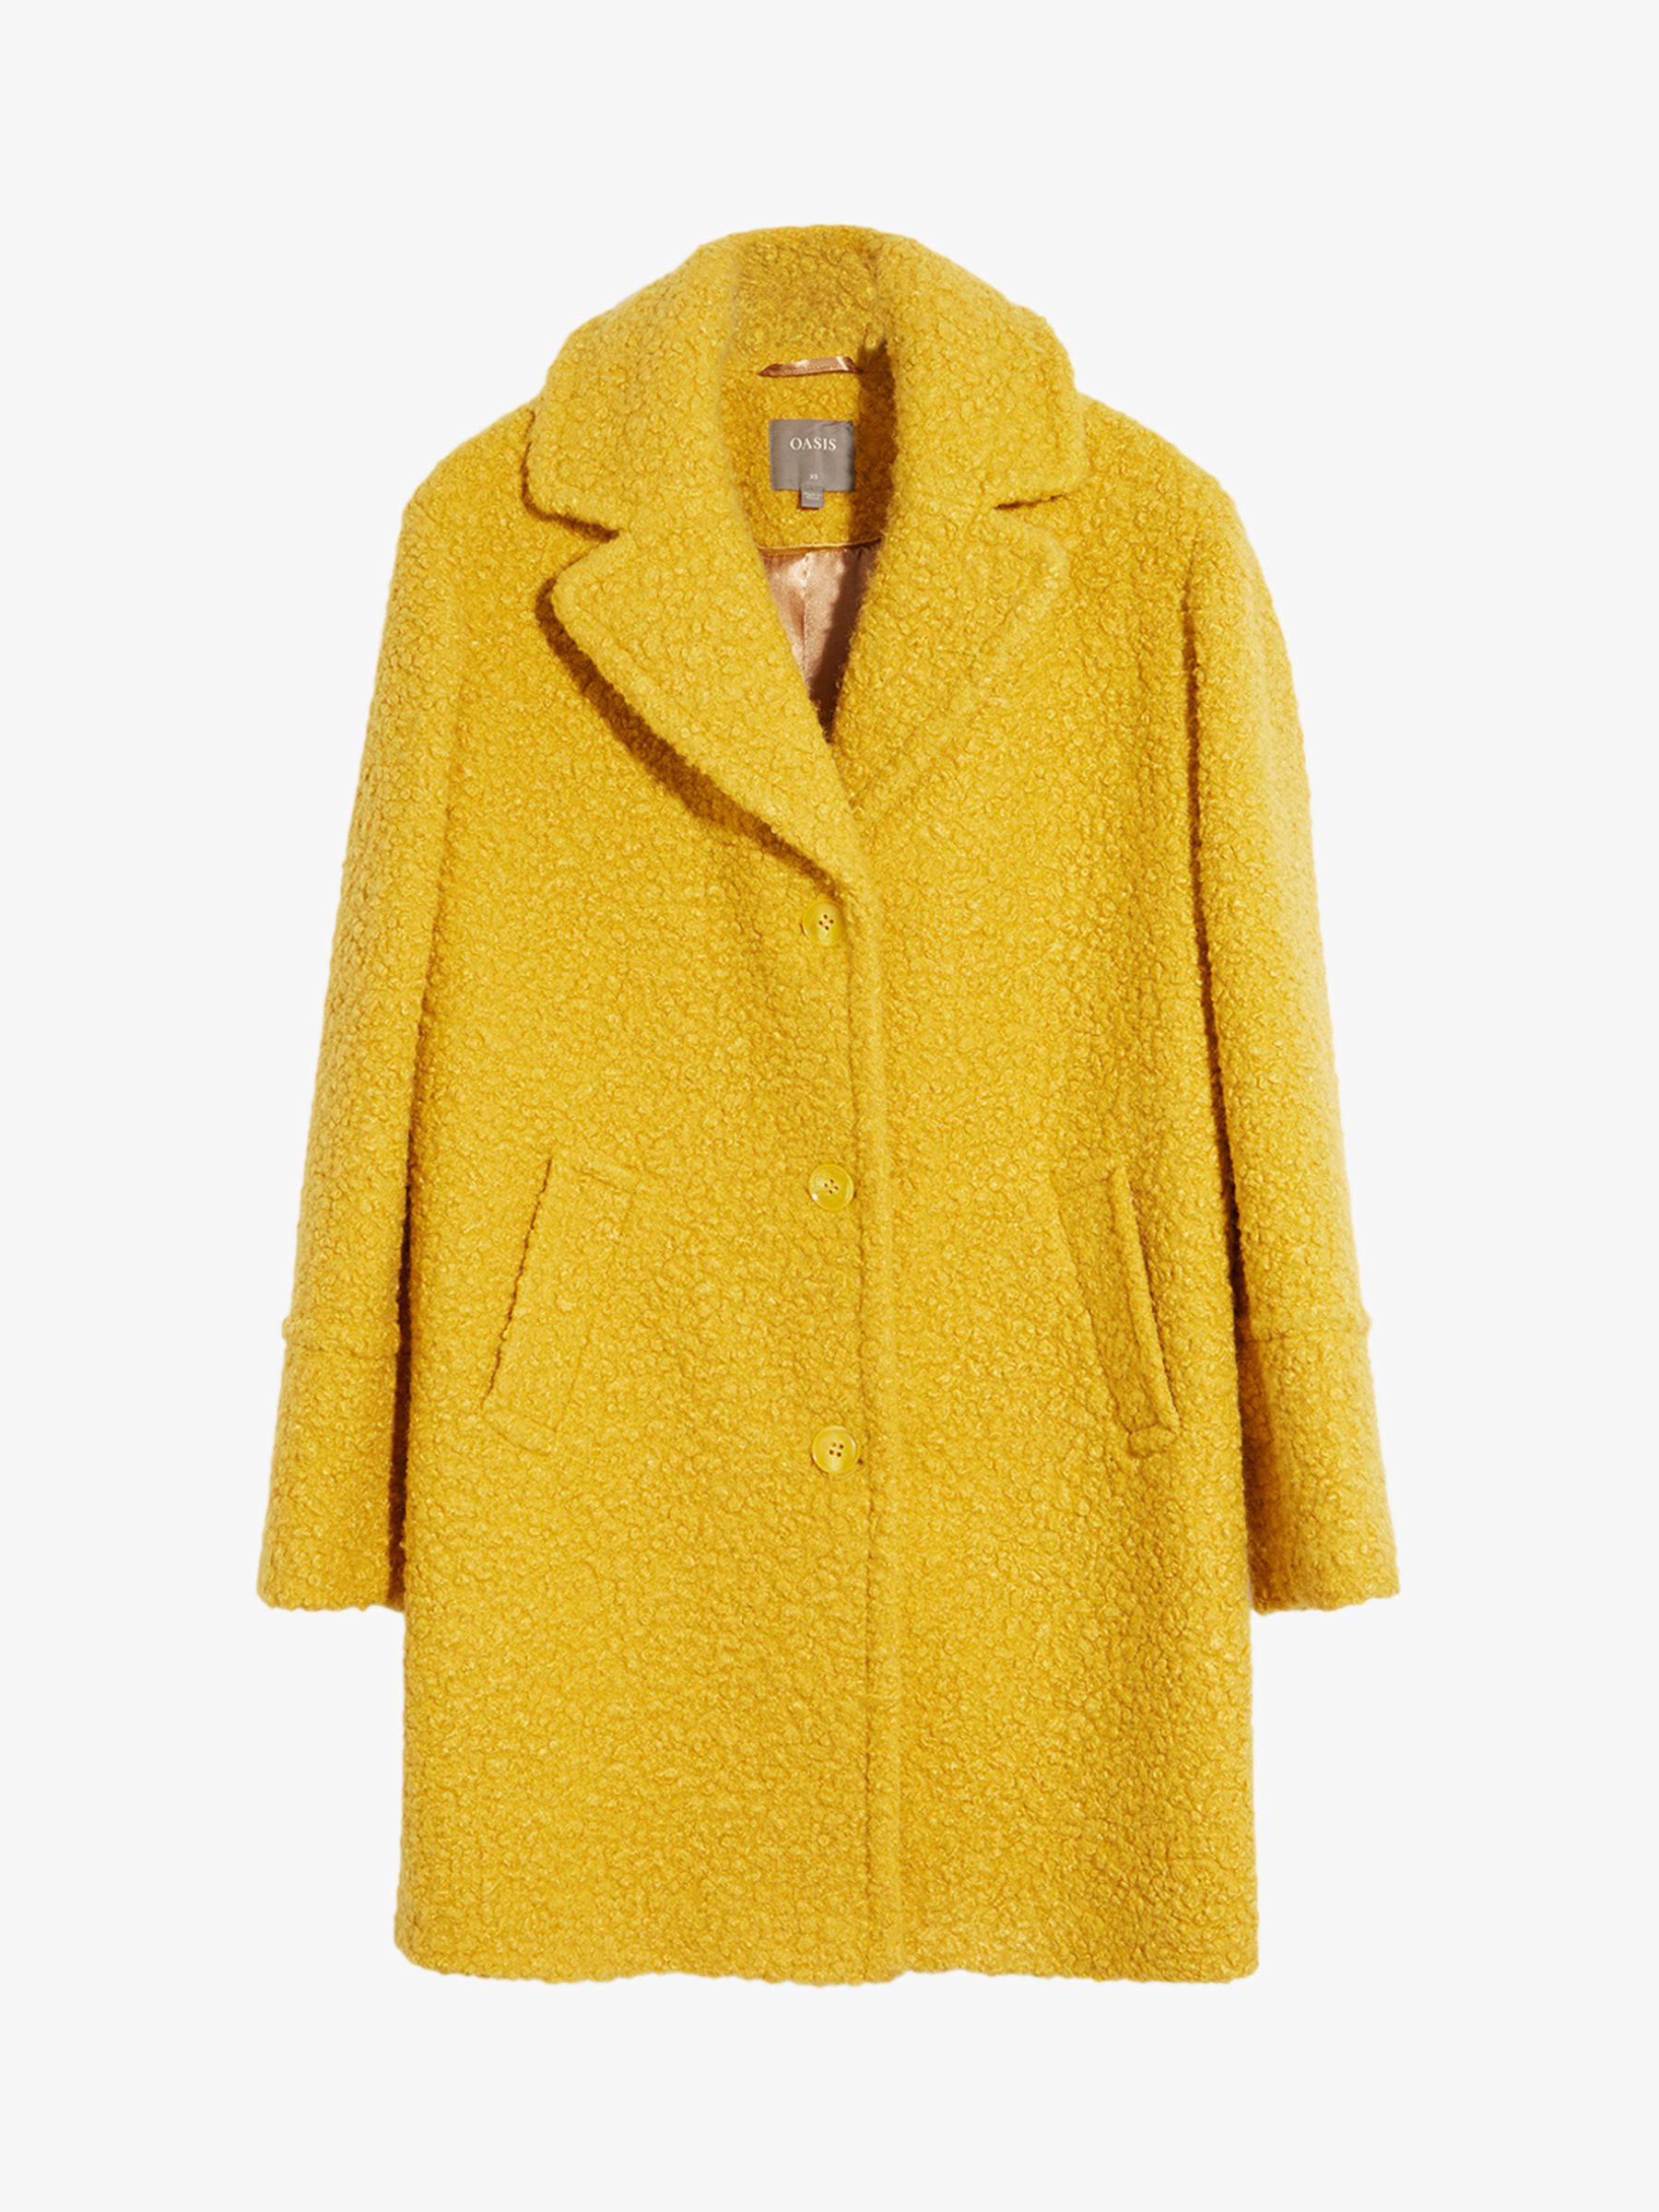 Oasis Boucle Teddy Coat, Yellow, XS